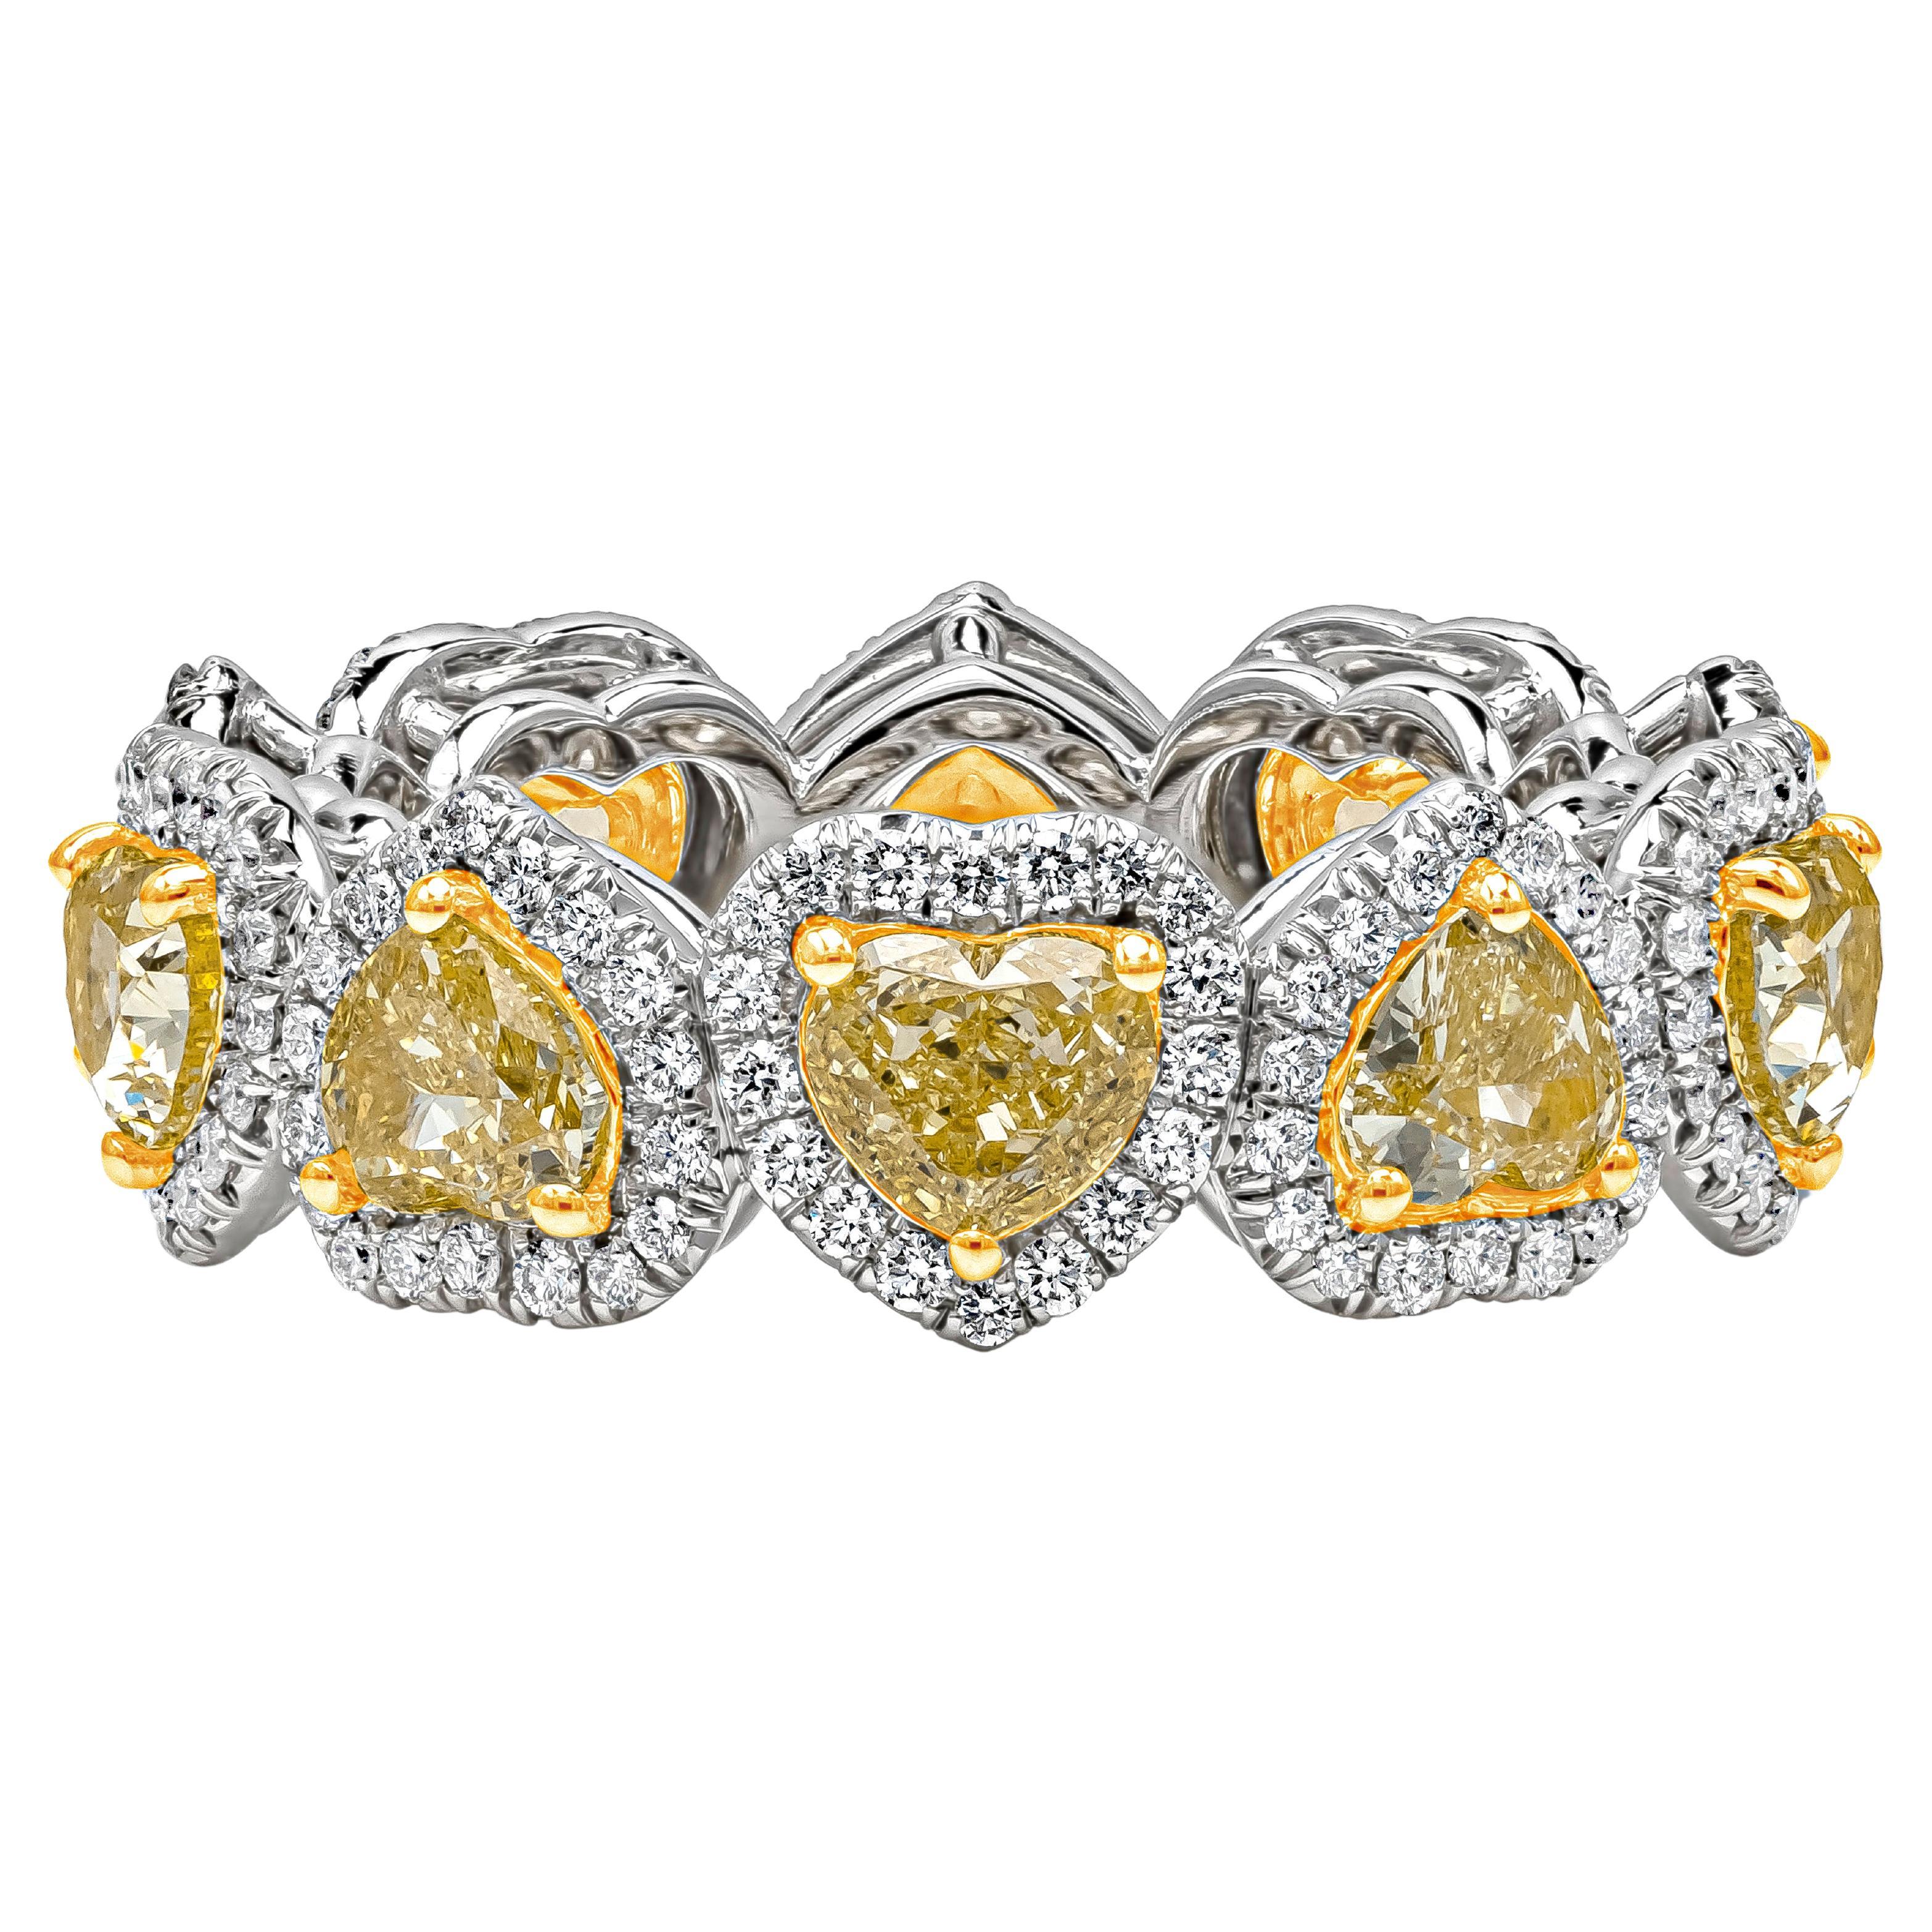 Roman Malakov, alliance halo de diamants jaunes en forme de cœur de 3,64 carats au total